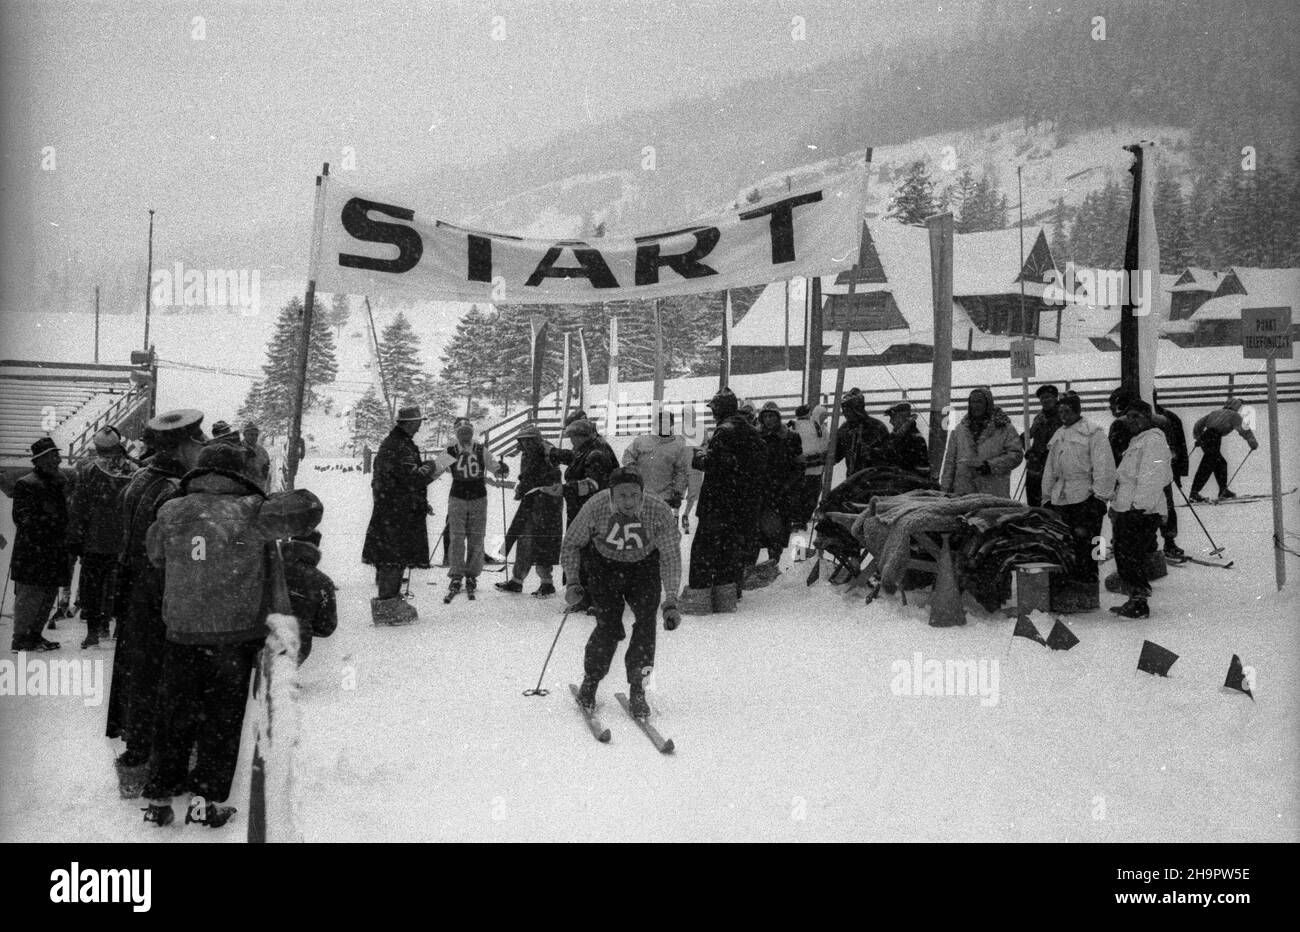 Zakopane, 1949-03-03. Miêdzynarodowe Zawody Narciarskie o Puchar Tatr (23 II-3 III). Start do biegu na 30 km na stadionie pod Krokwi¹. Nz. reprezentanci Czechos³owacji Karel Dvorak (nr 45) i Miroslav Marousek (nr 46). ka  PAP      Zakopane, March 3, 1949. The International Skiing Tournement for the Tatra Mountains Cup (February 23 -March 3). The start to a 30-kilometre cross country skiing from the sport stadium under Krokiew. Pictured: representatives of Czechoslovakia Karel Dvorak (No. 45), Miroslav Marousek (No. 46).  ka  PAP Stock Photo